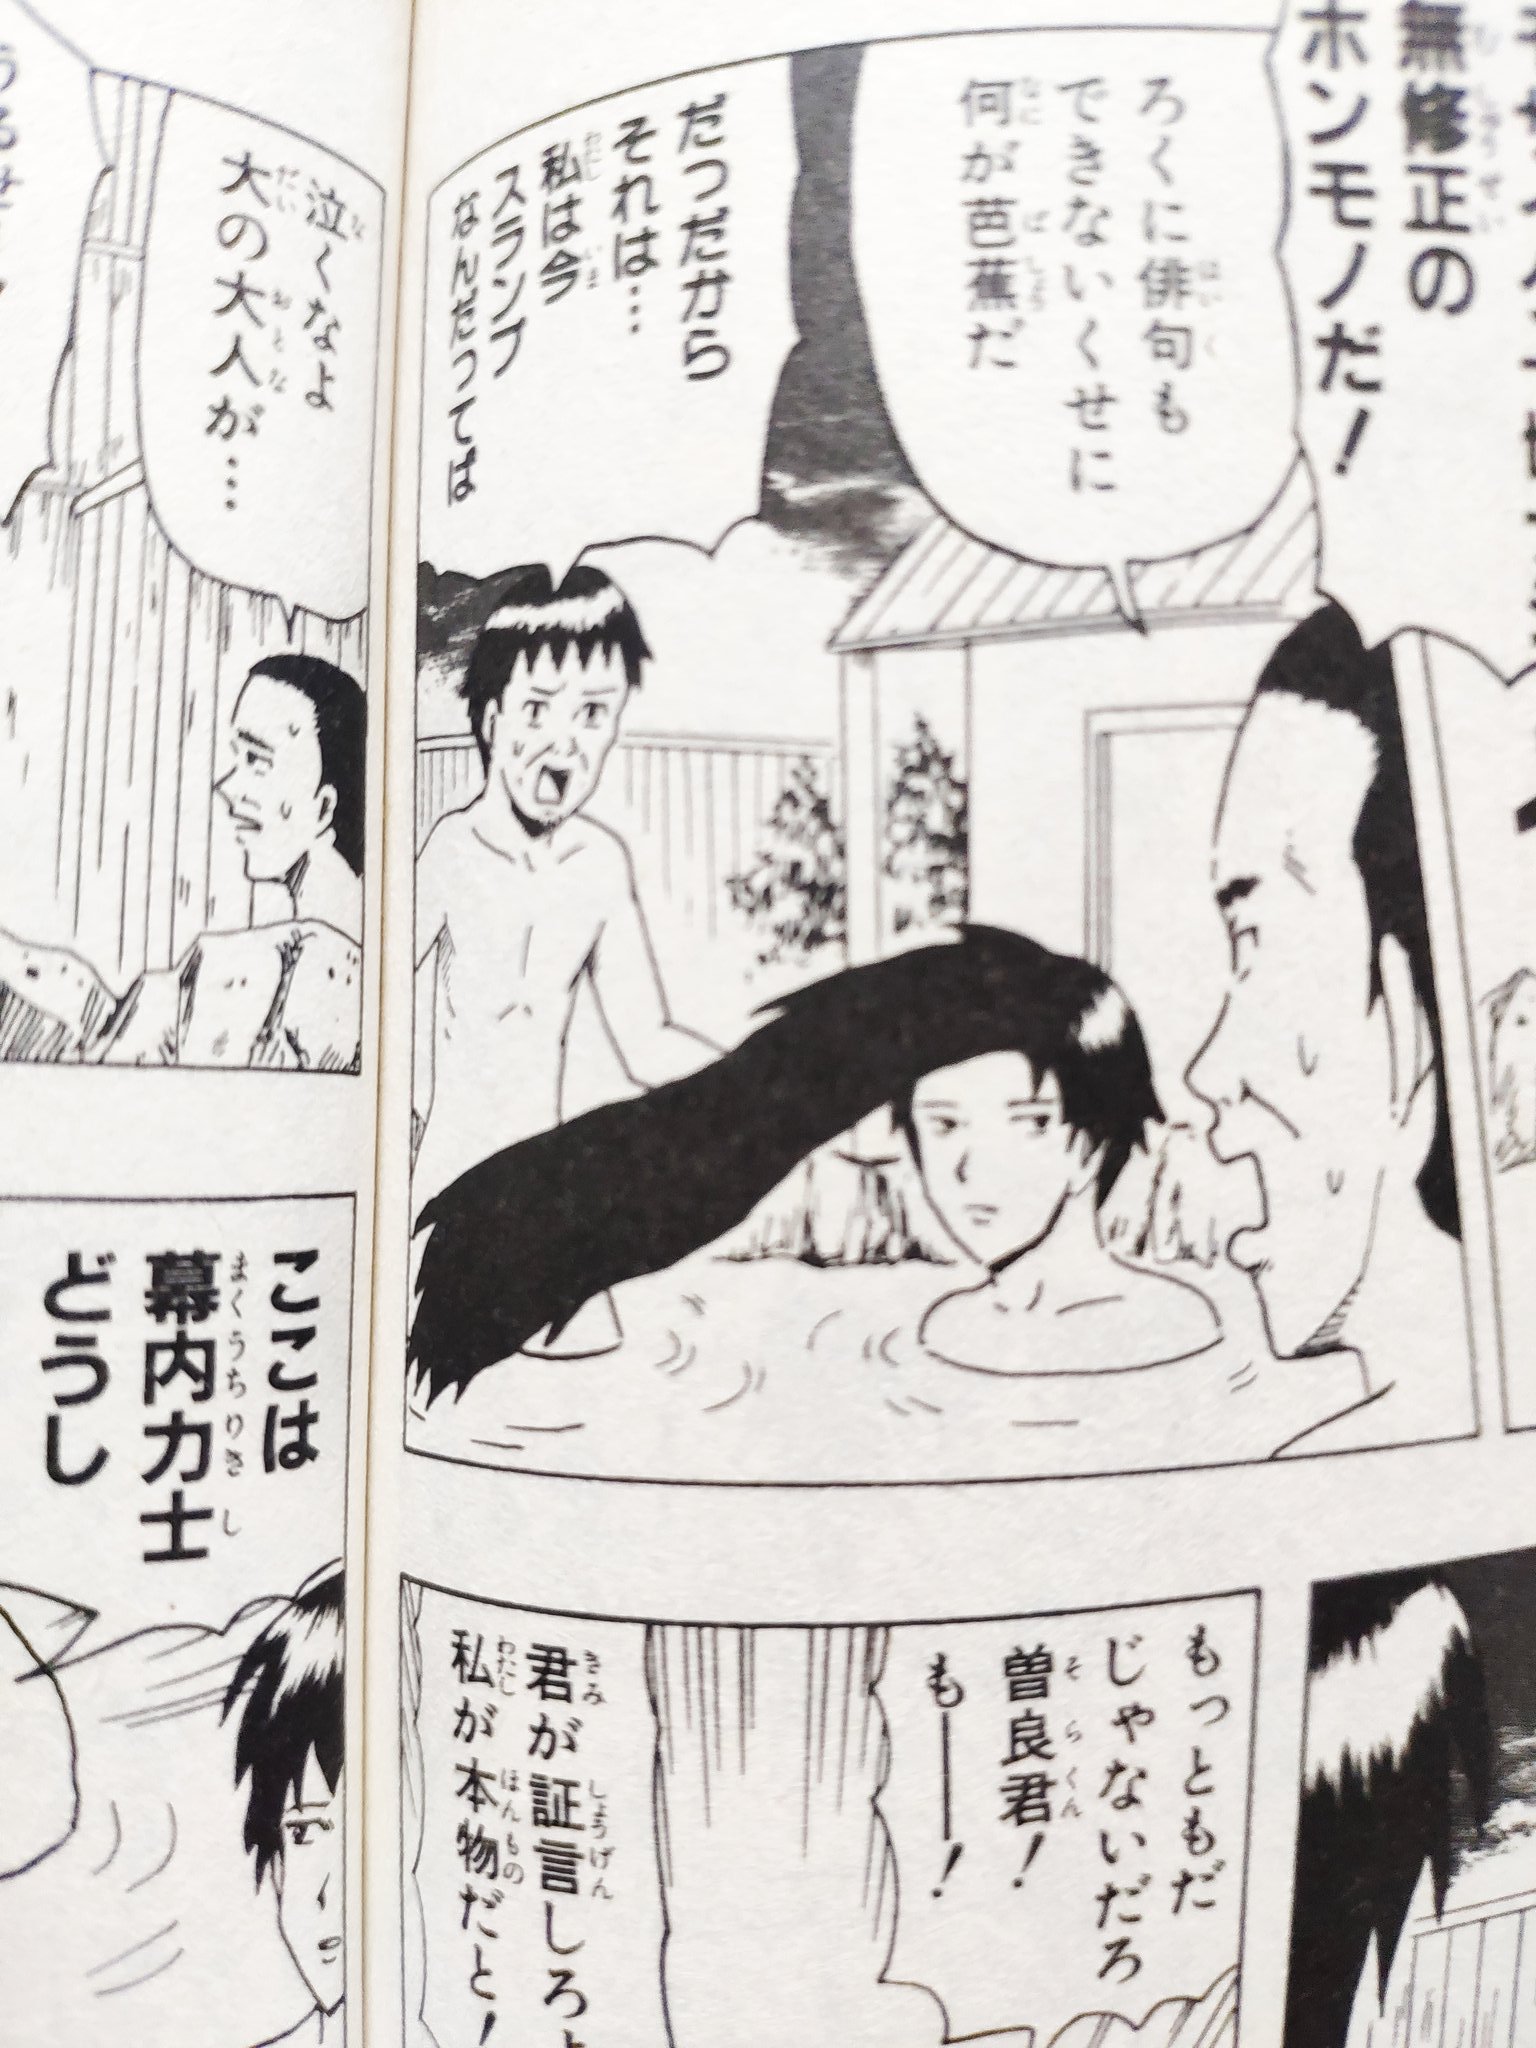 A formas de Censuras em Cenas Ecchis nos Animes 6